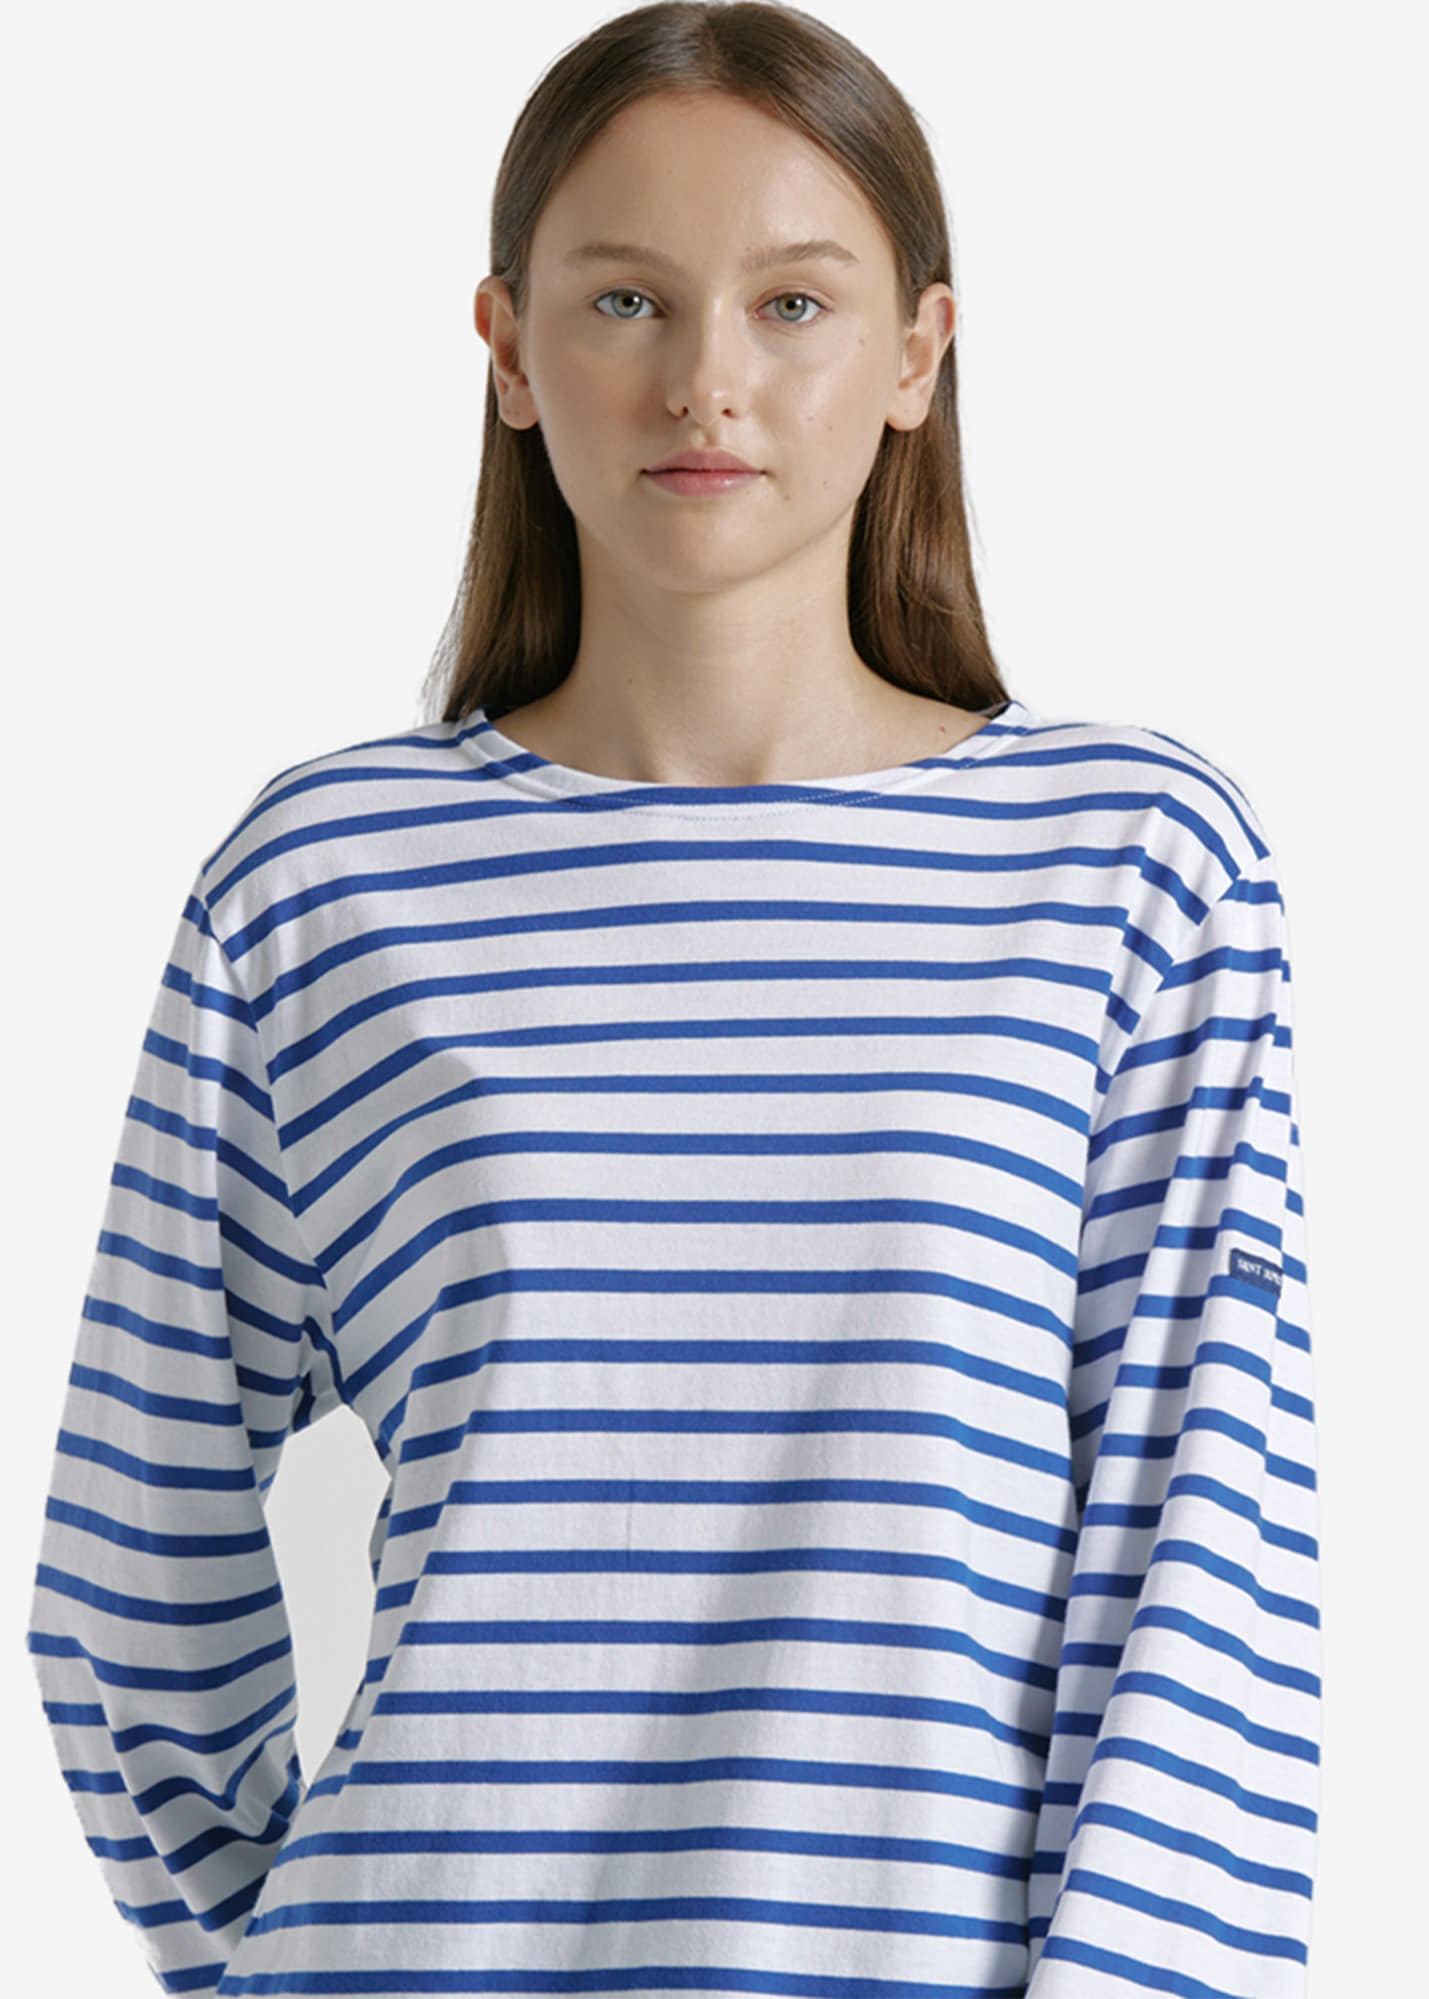 세인트제임스 긴팔 티셔츠 MINQUIERS 18 T-SHIRT (BLUE)